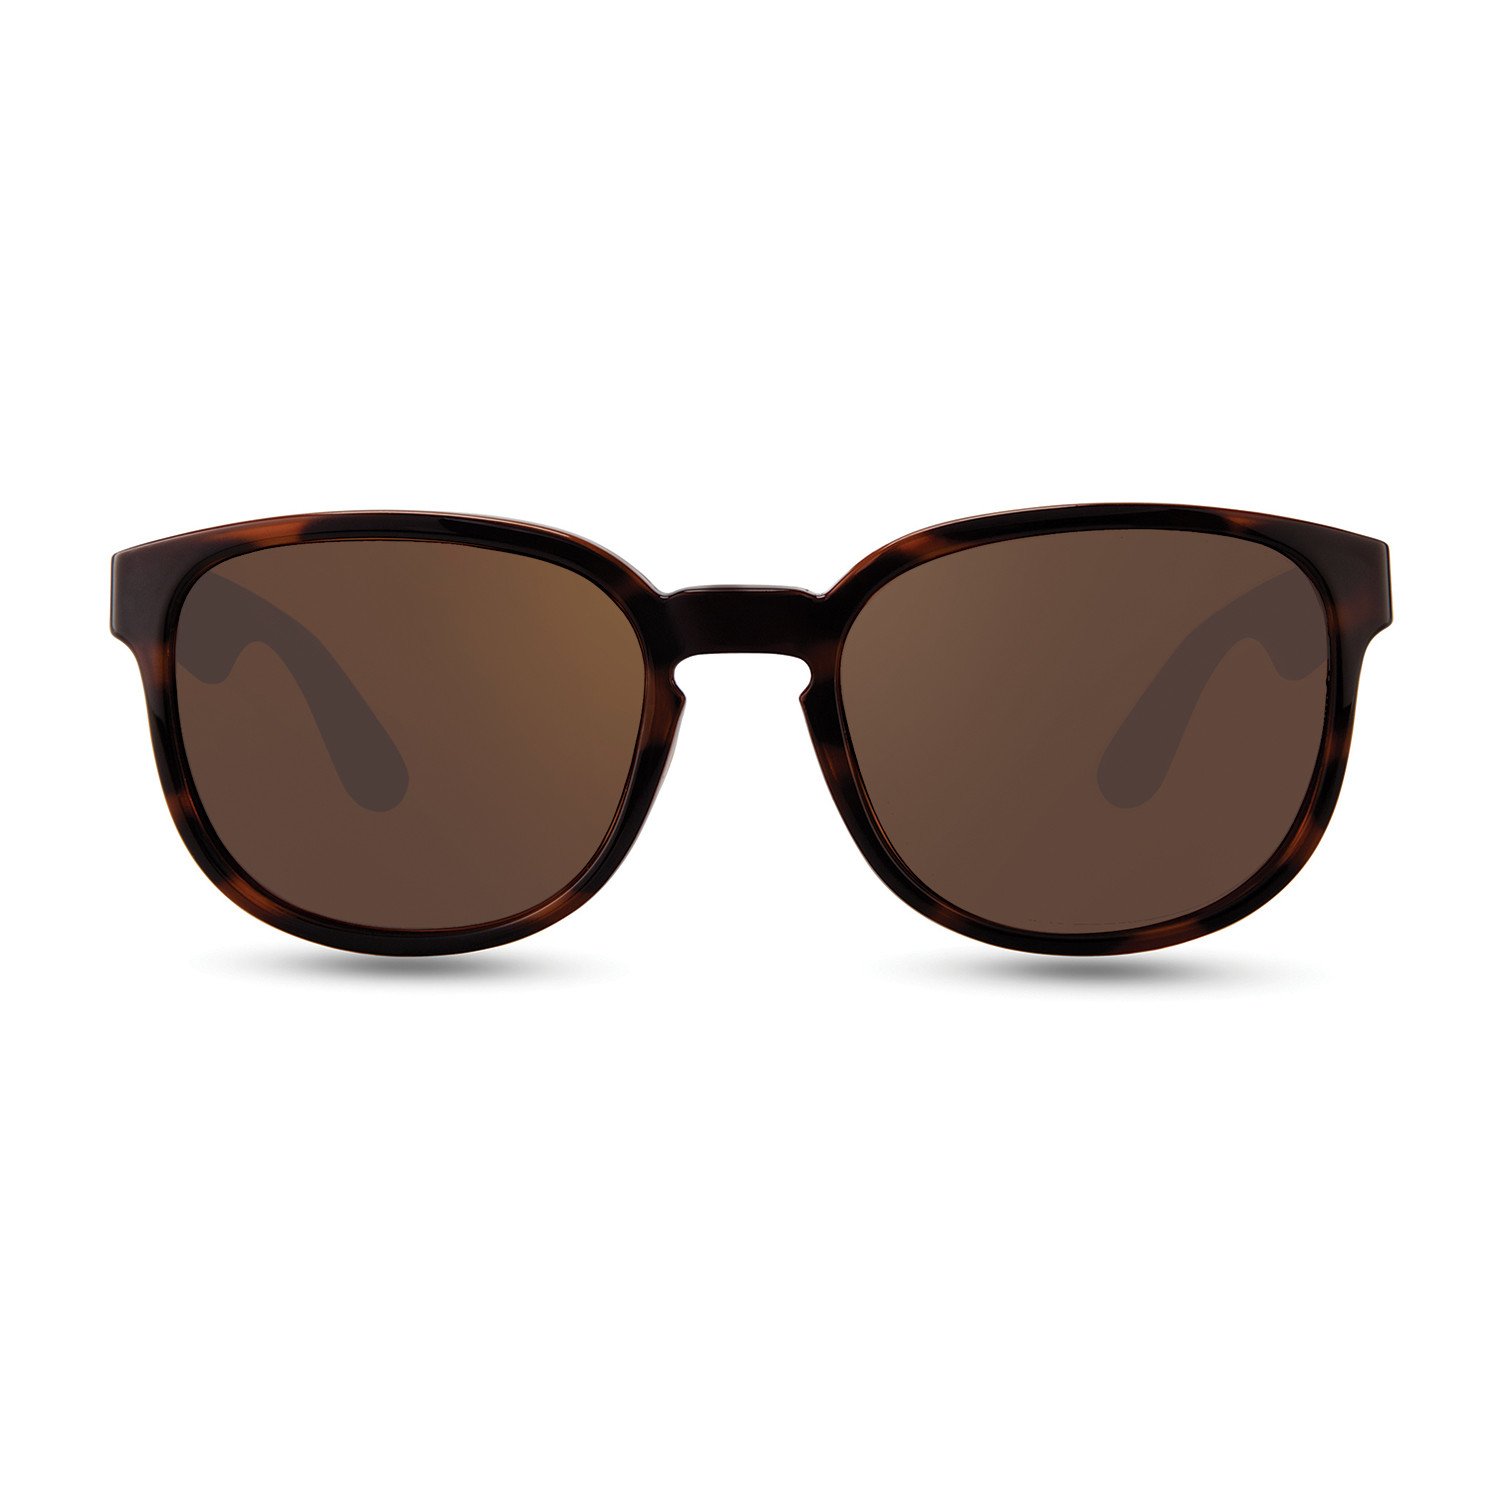 Unisex Kash Polarized Sunglasses // Tort, Bone, Red + Terra Lens - Revo ...